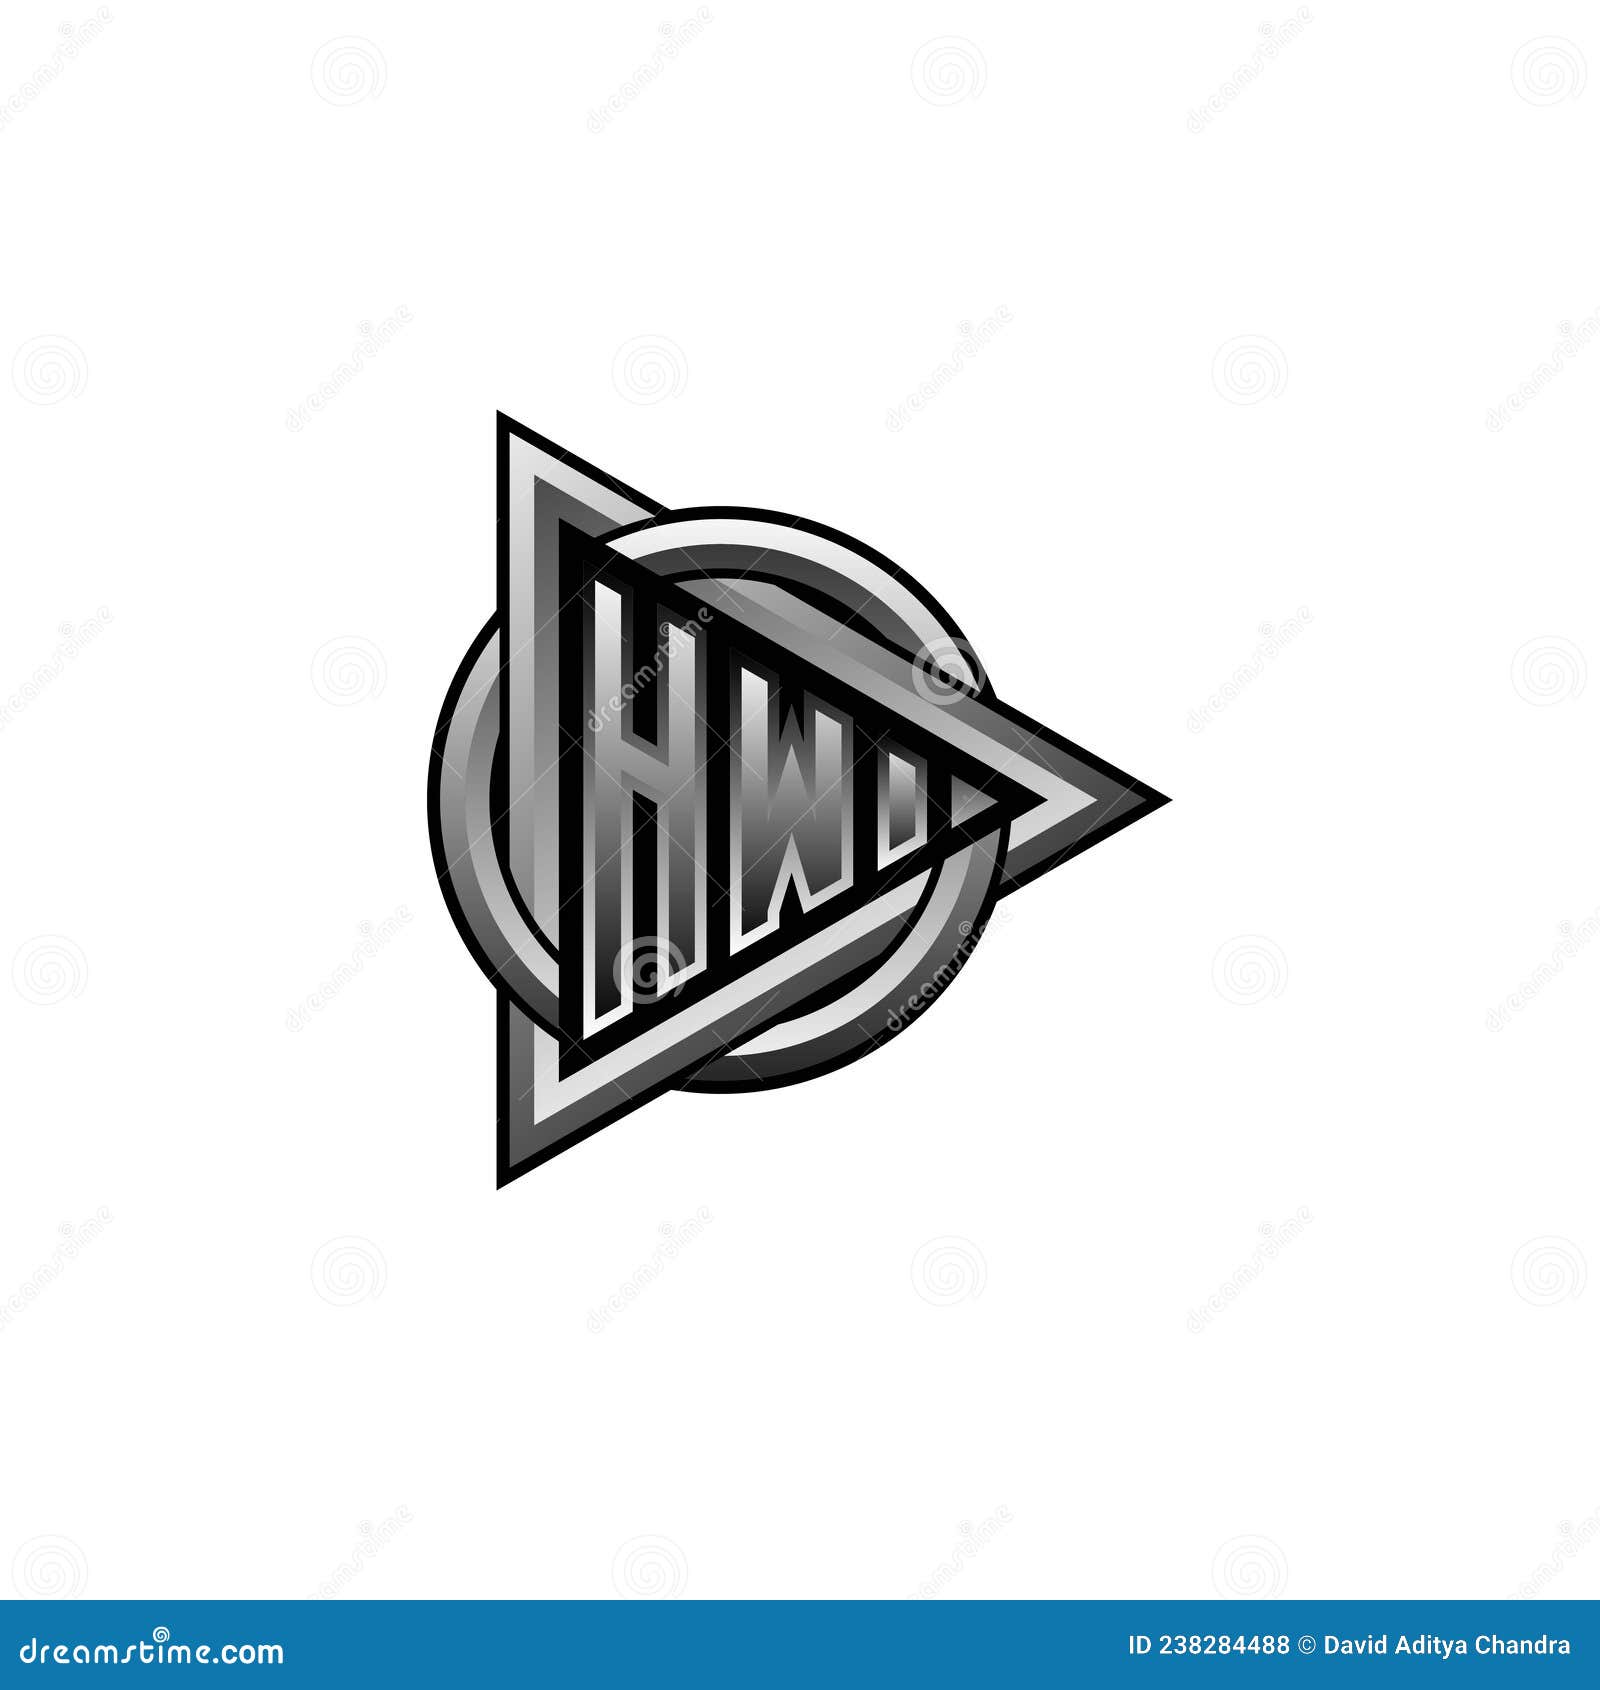 Letter hw logo design Royalty Free Vector Image